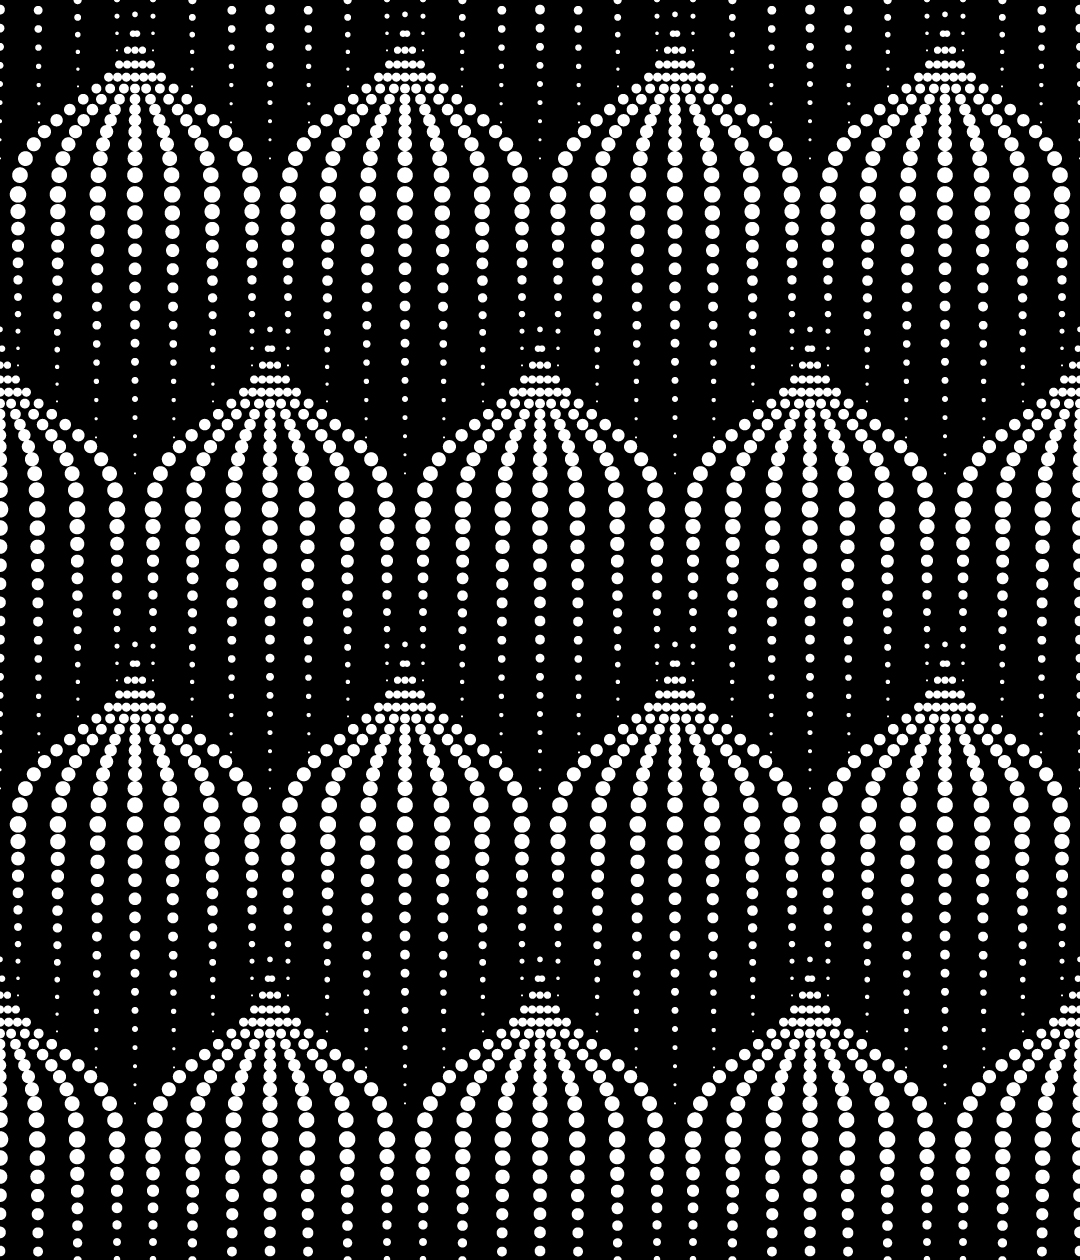 黑白几何抽象无缝底纹背景矢量素材5